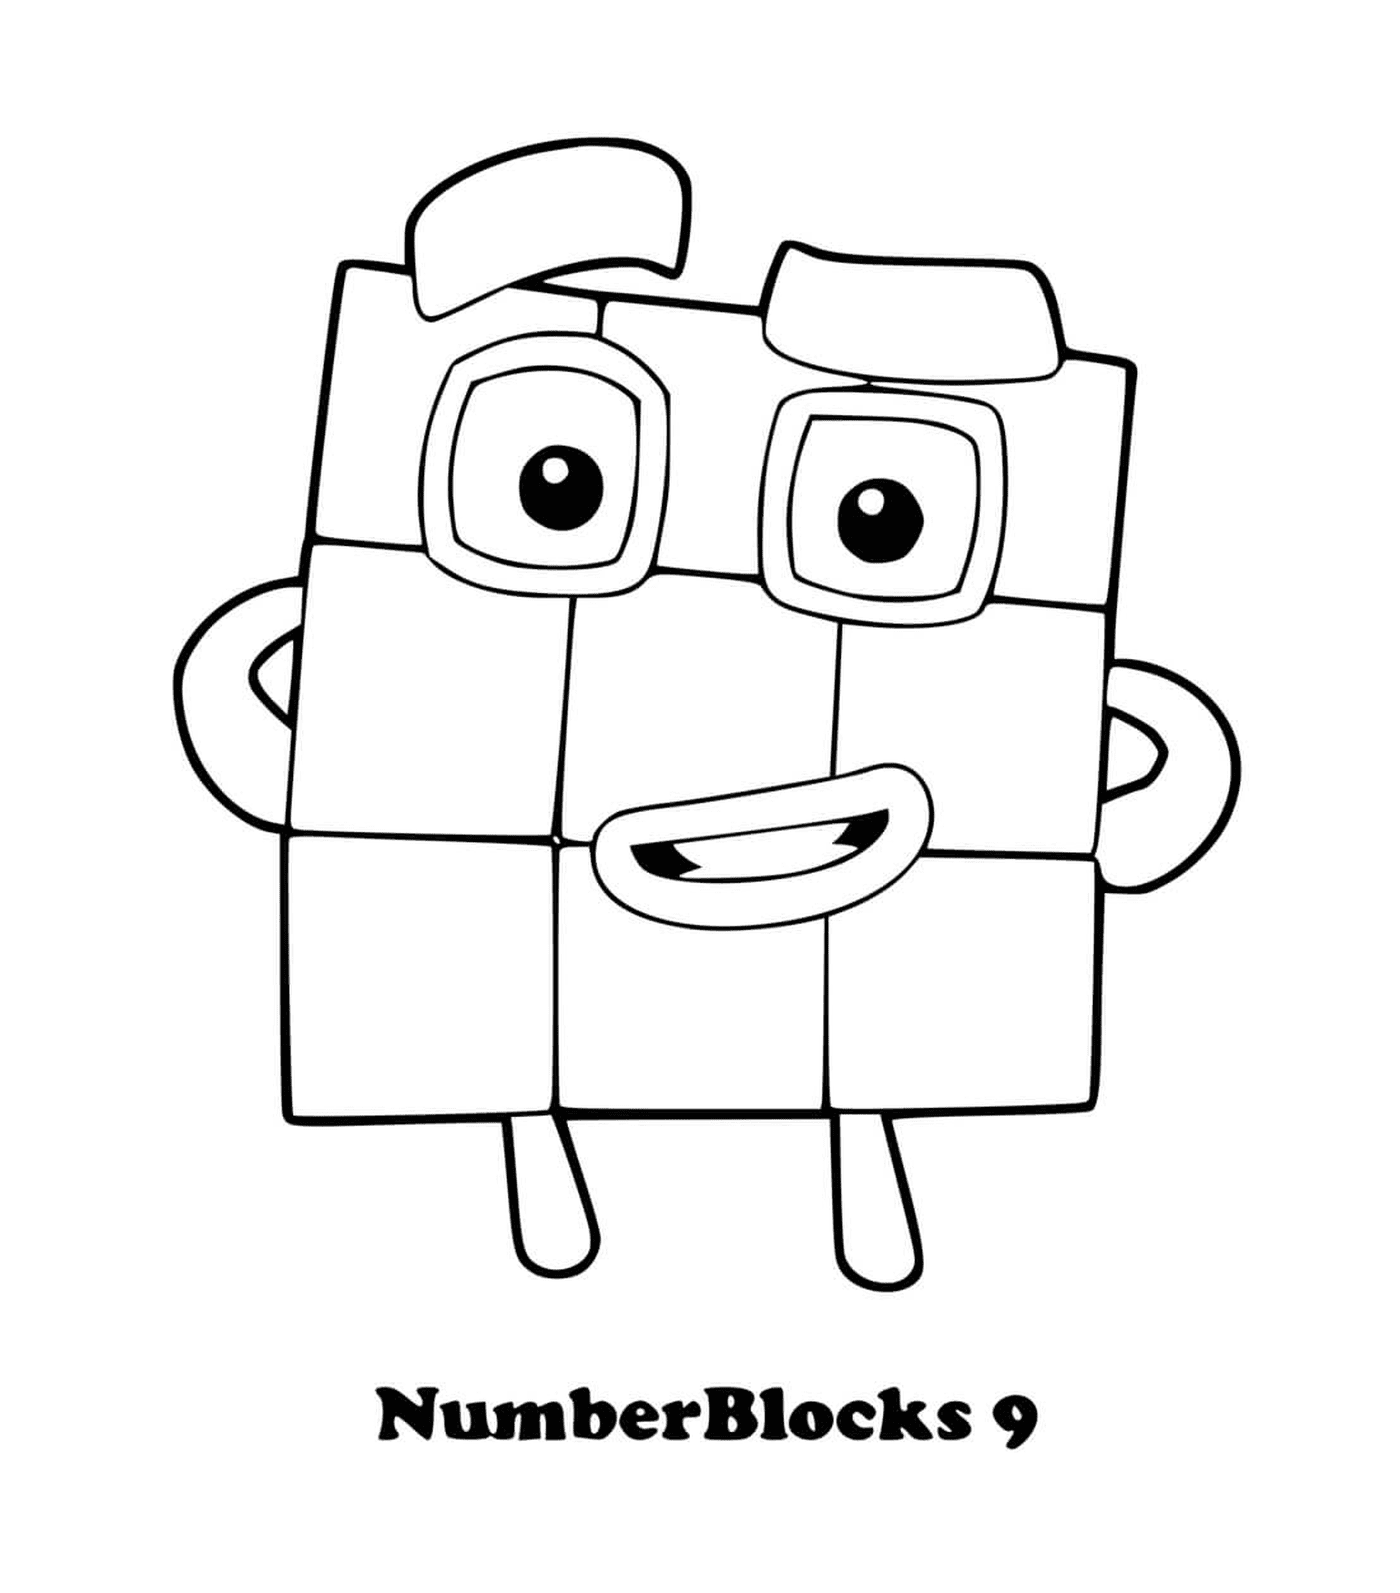  Numberblocks número 9, um quadrado com olhos 